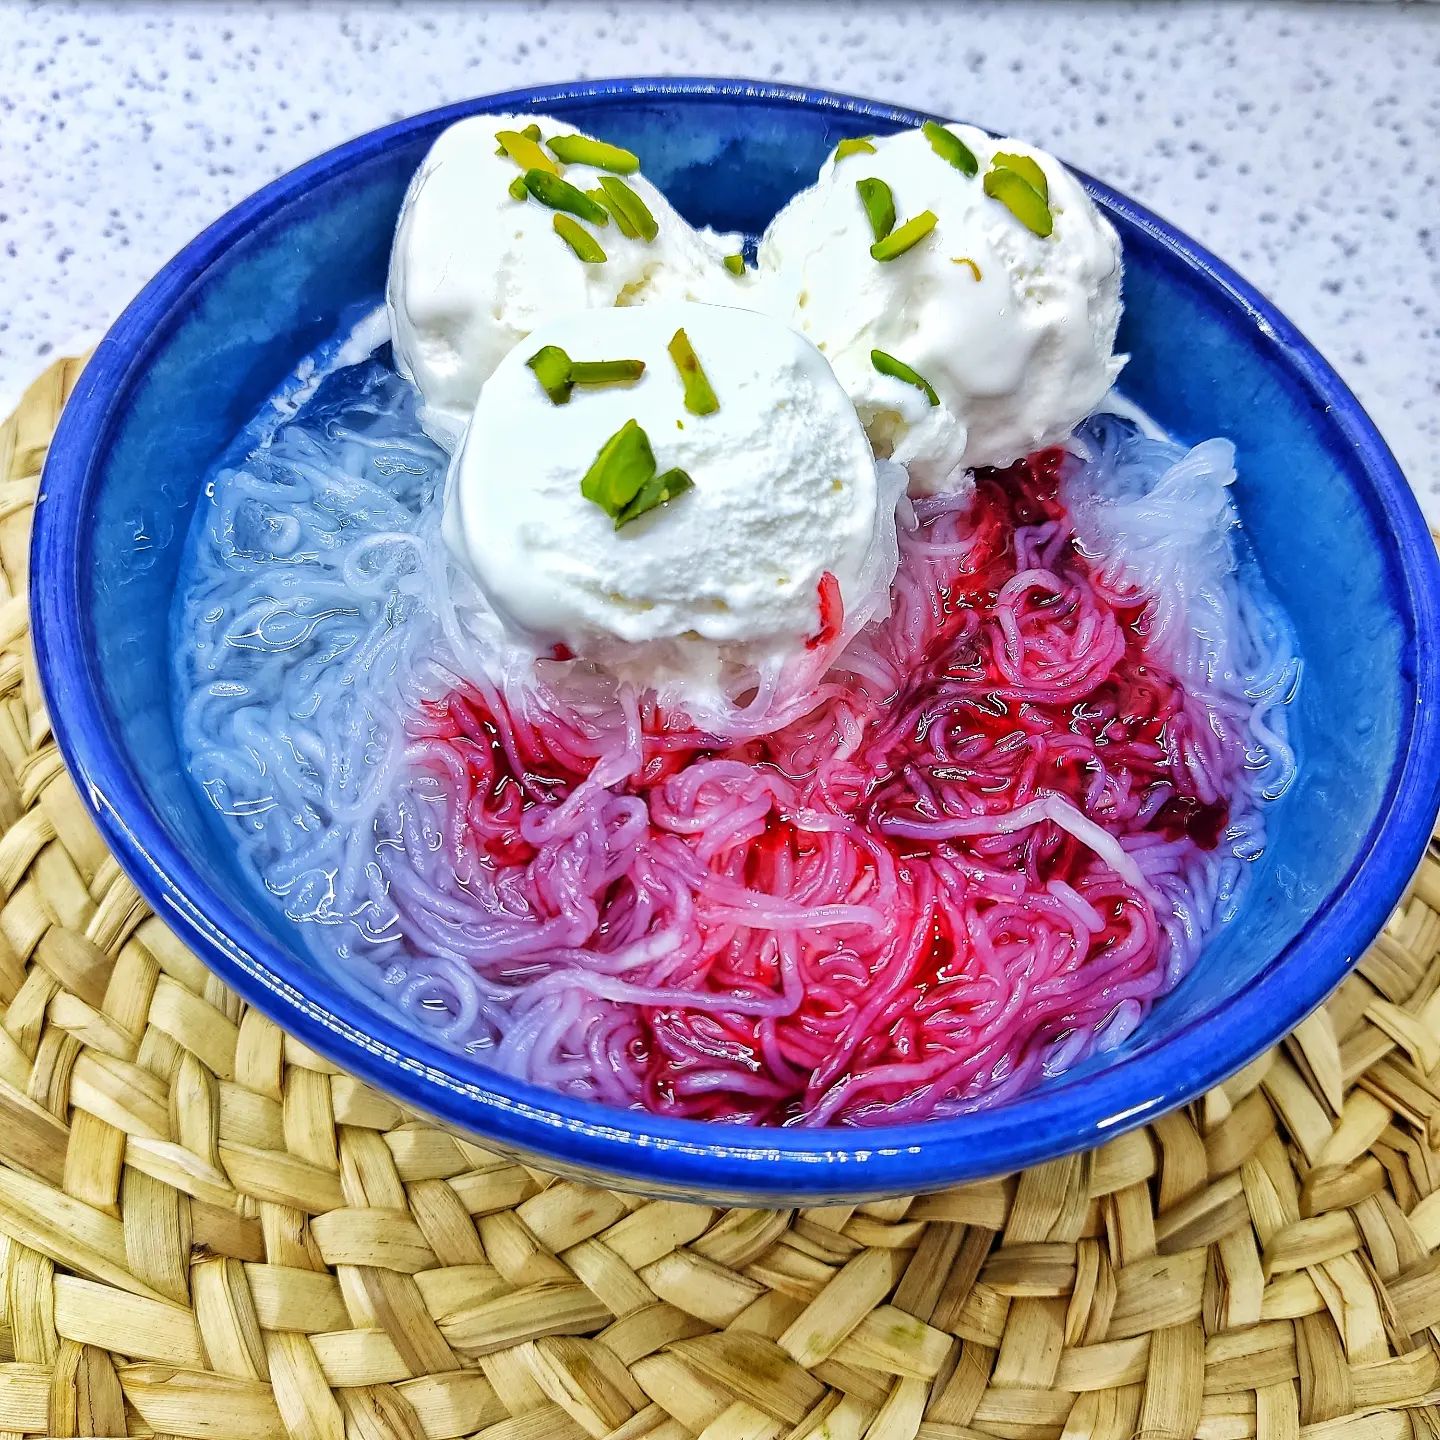 طرز تهیه فالوده شیرازی با رشته آماده سریع و خوشمزه در خانه